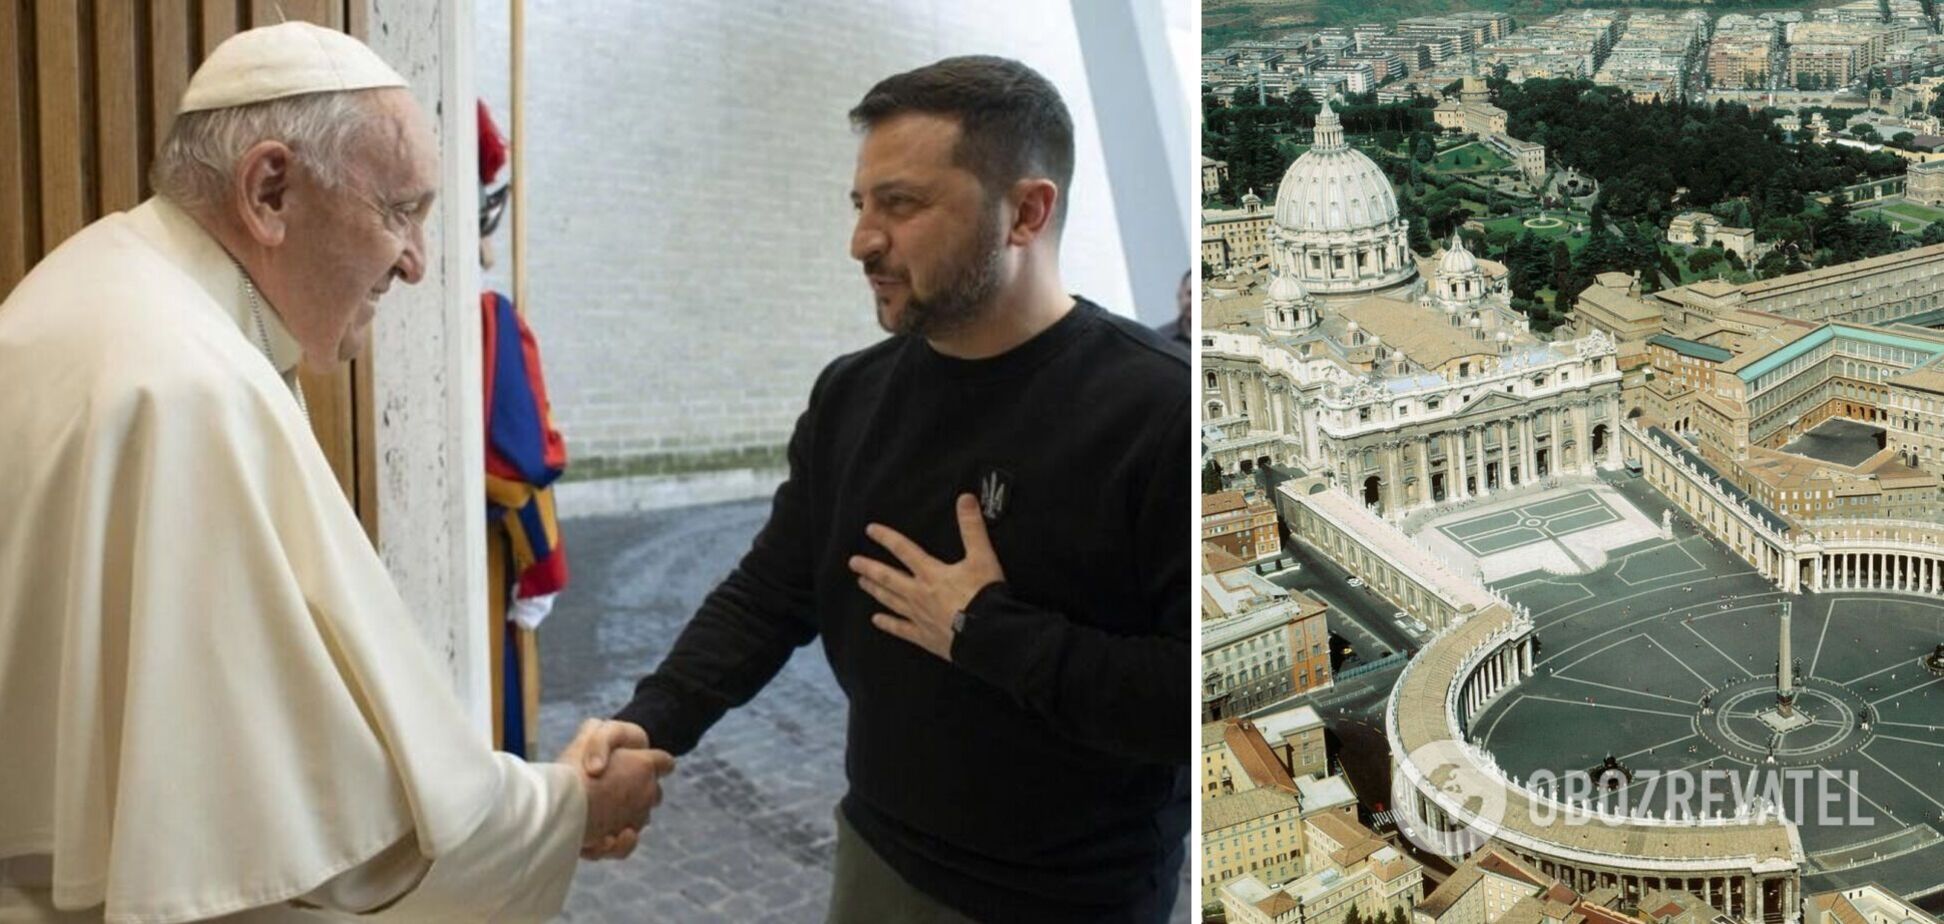 Зеленский обсудил с Папой Римским 'формулу мира' и призвал Ватикан осудить преступления РФ в Украине. Фото и видео